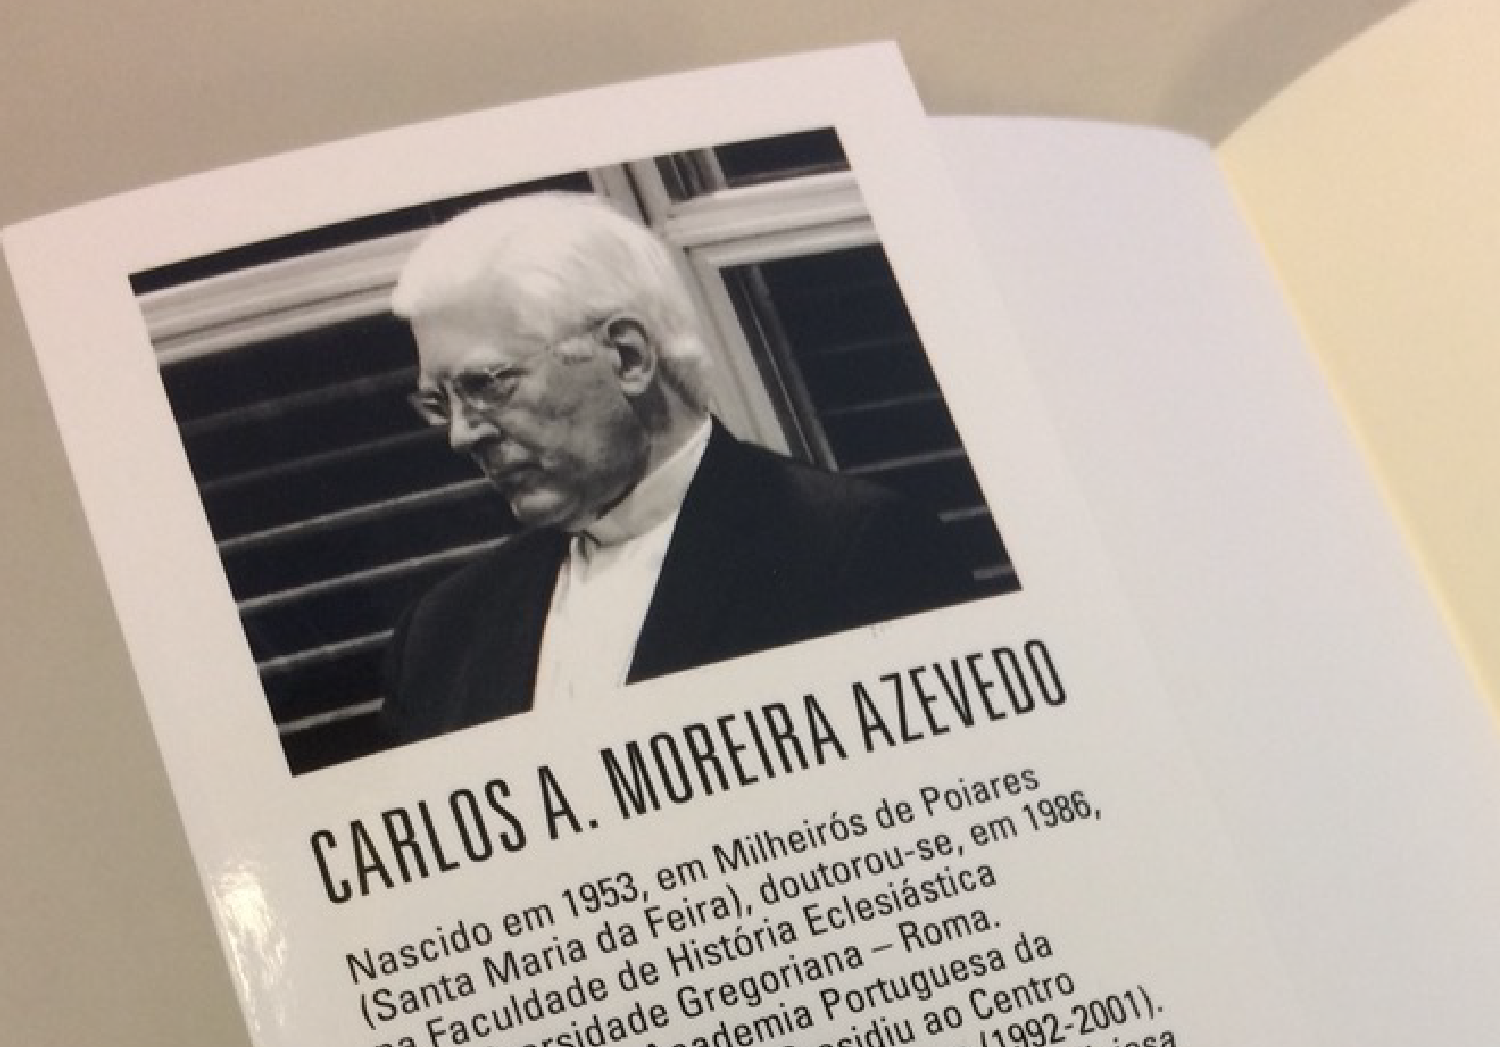 D. Carlos Azevedo: "Nunca fui a Fátima a pé"